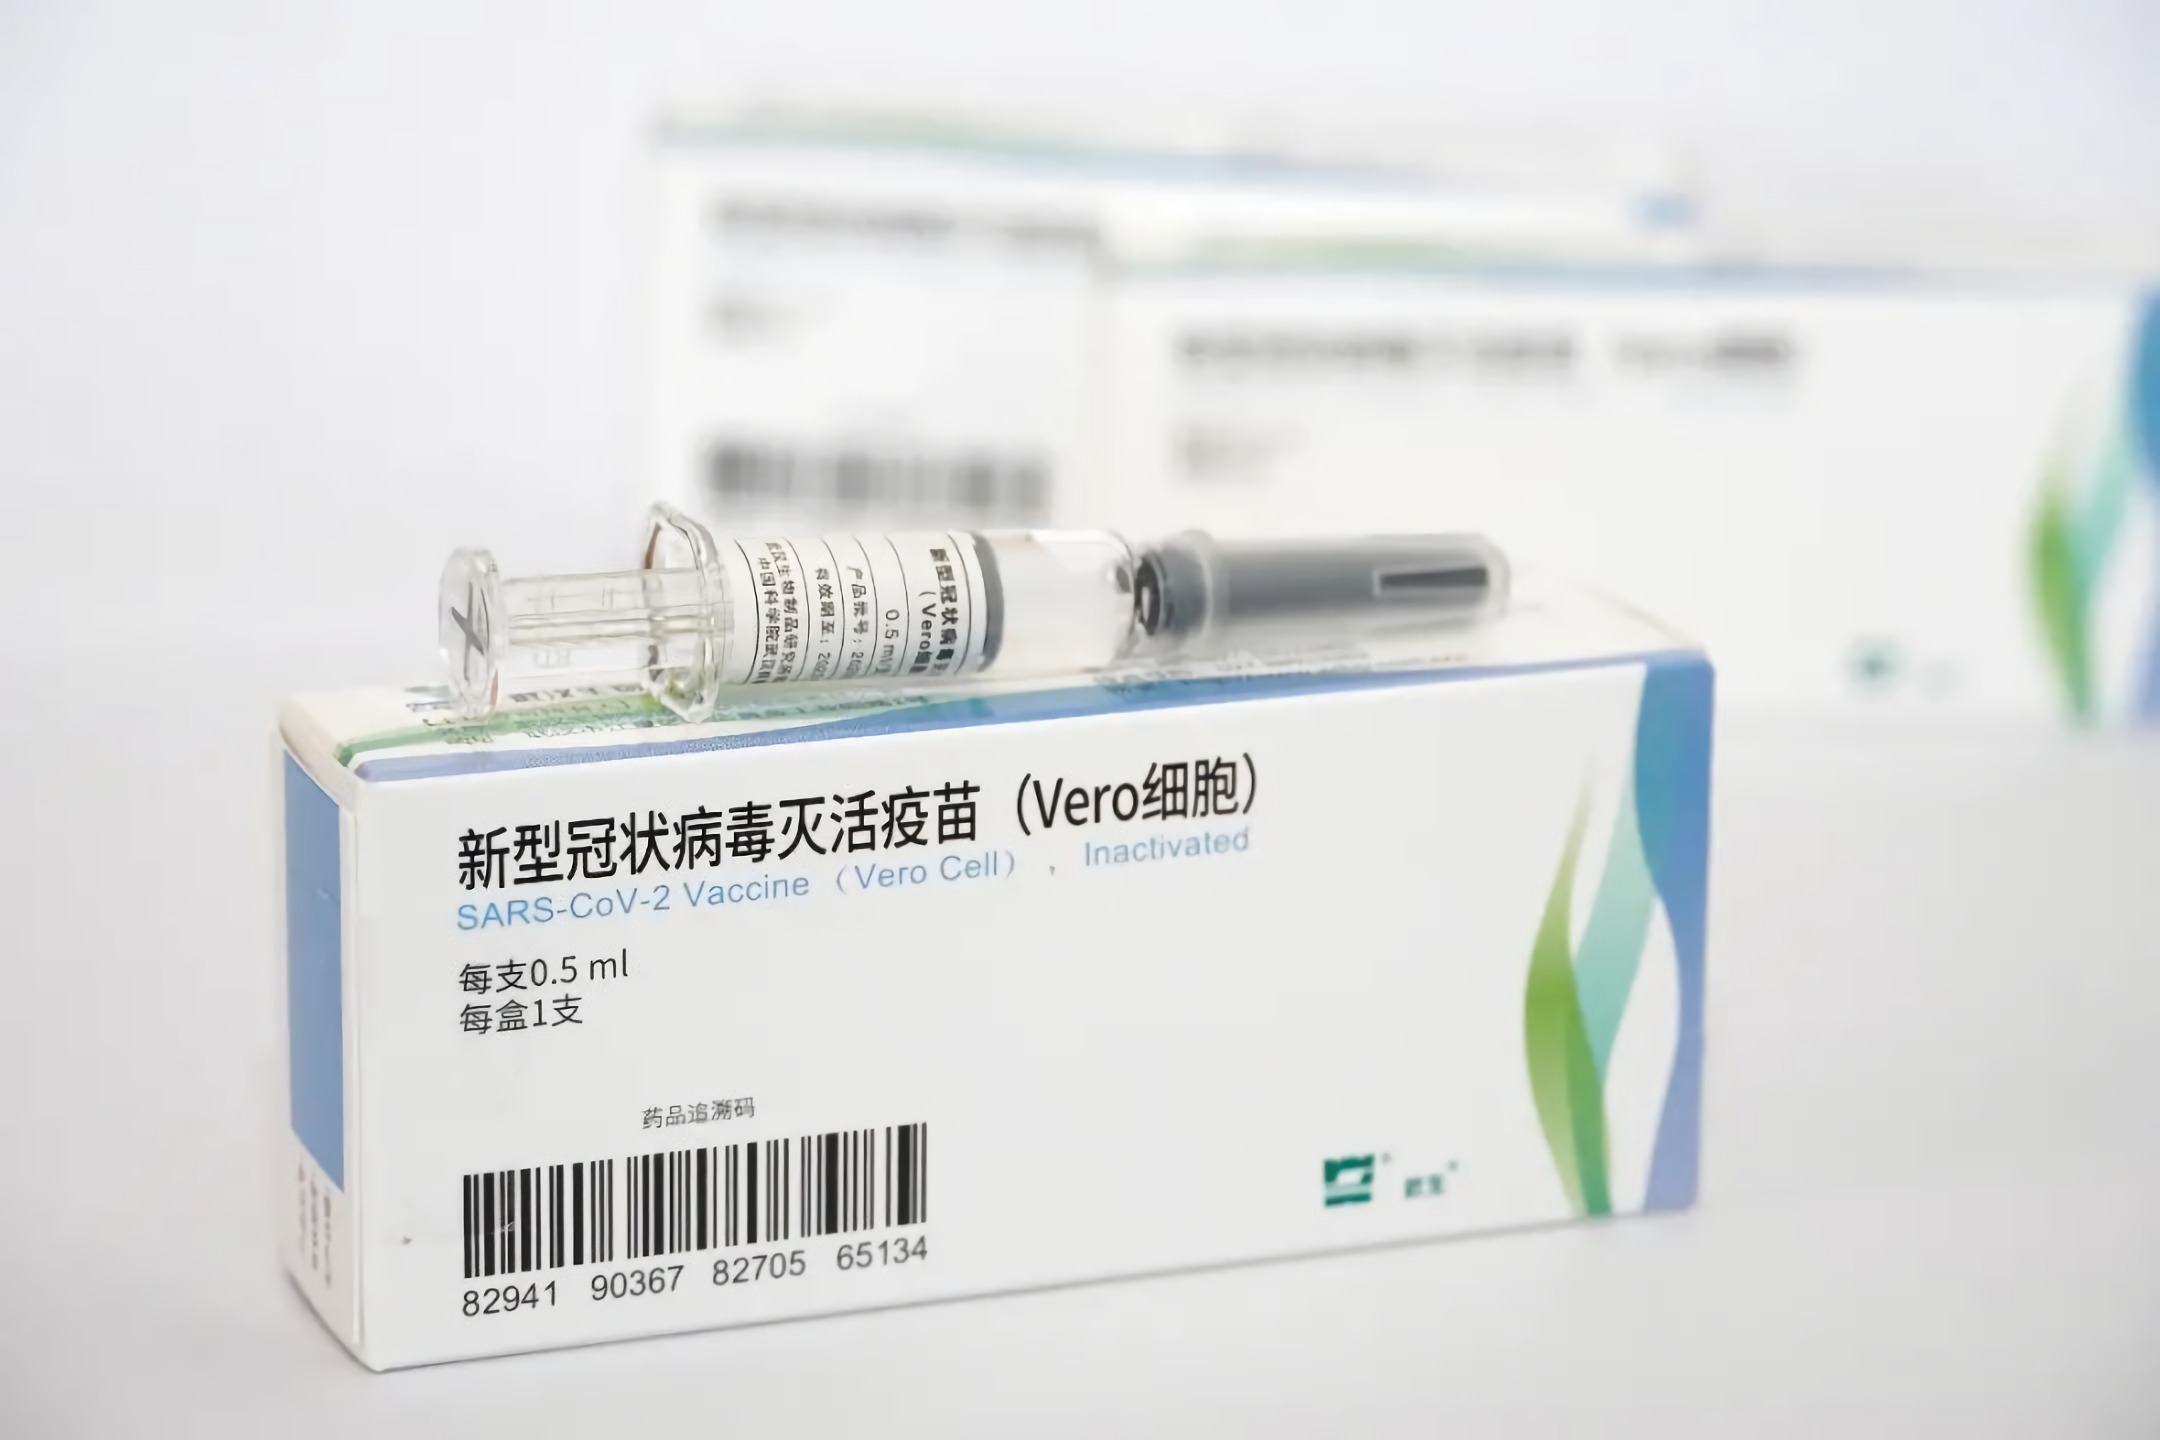 生物制品研究所和中国科学院武汉病毒研究所联合研制的新冠灭活疫苗i